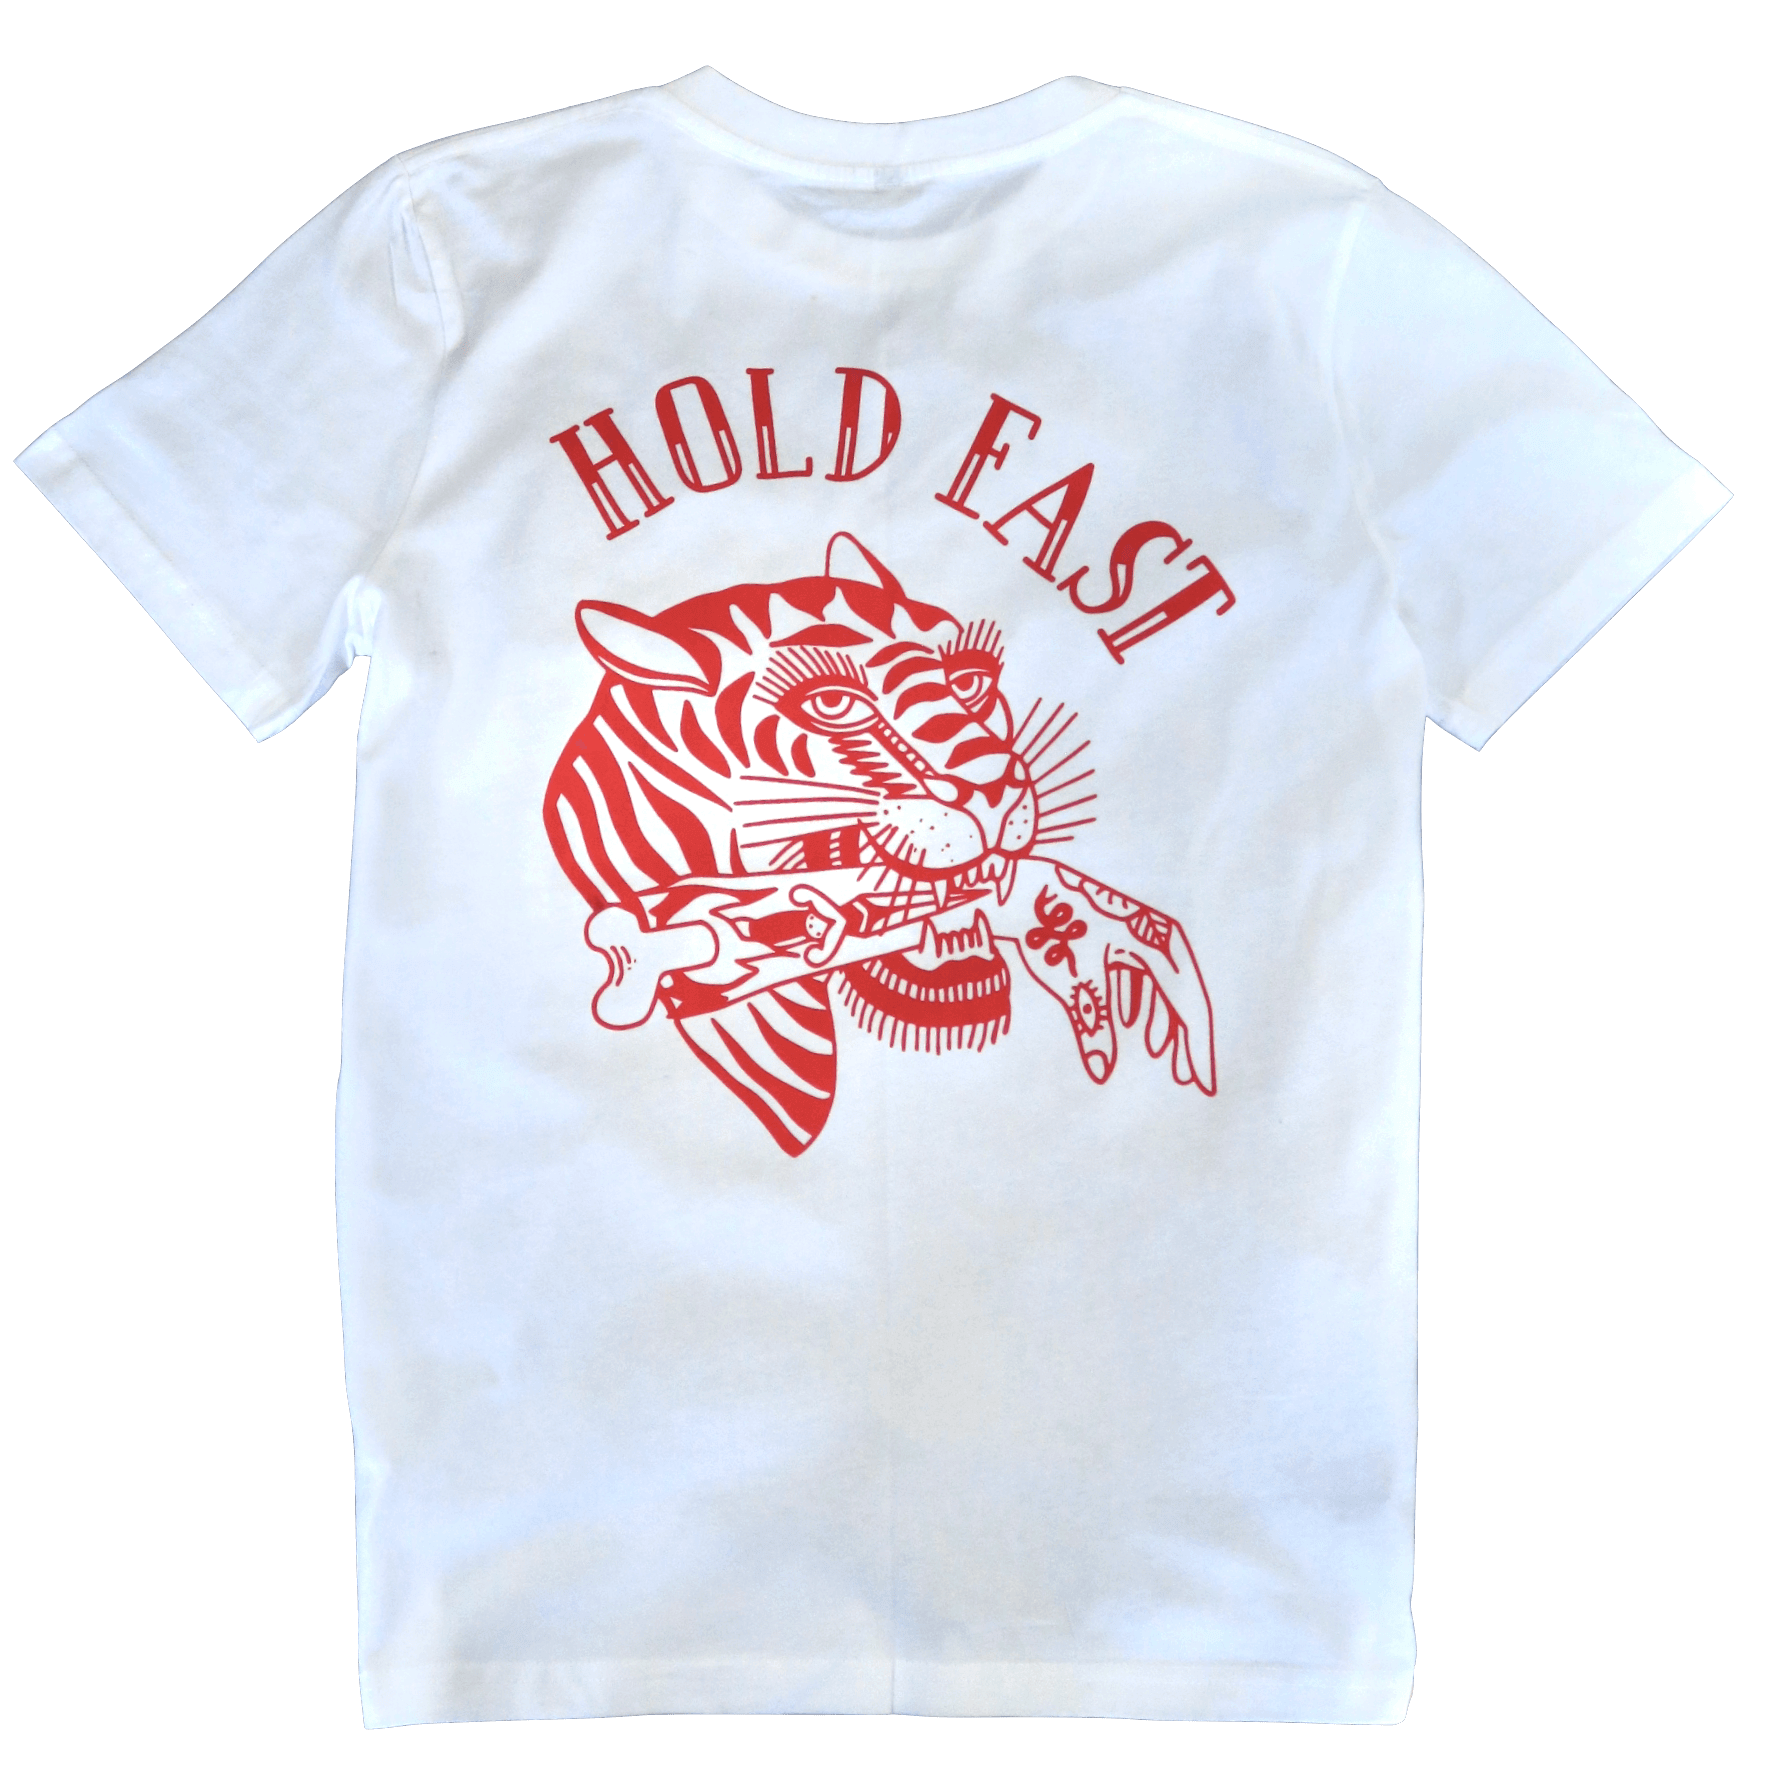 Hold Fast T-Shirt † By Clemens Hahn - White - THROTTLESNAKE